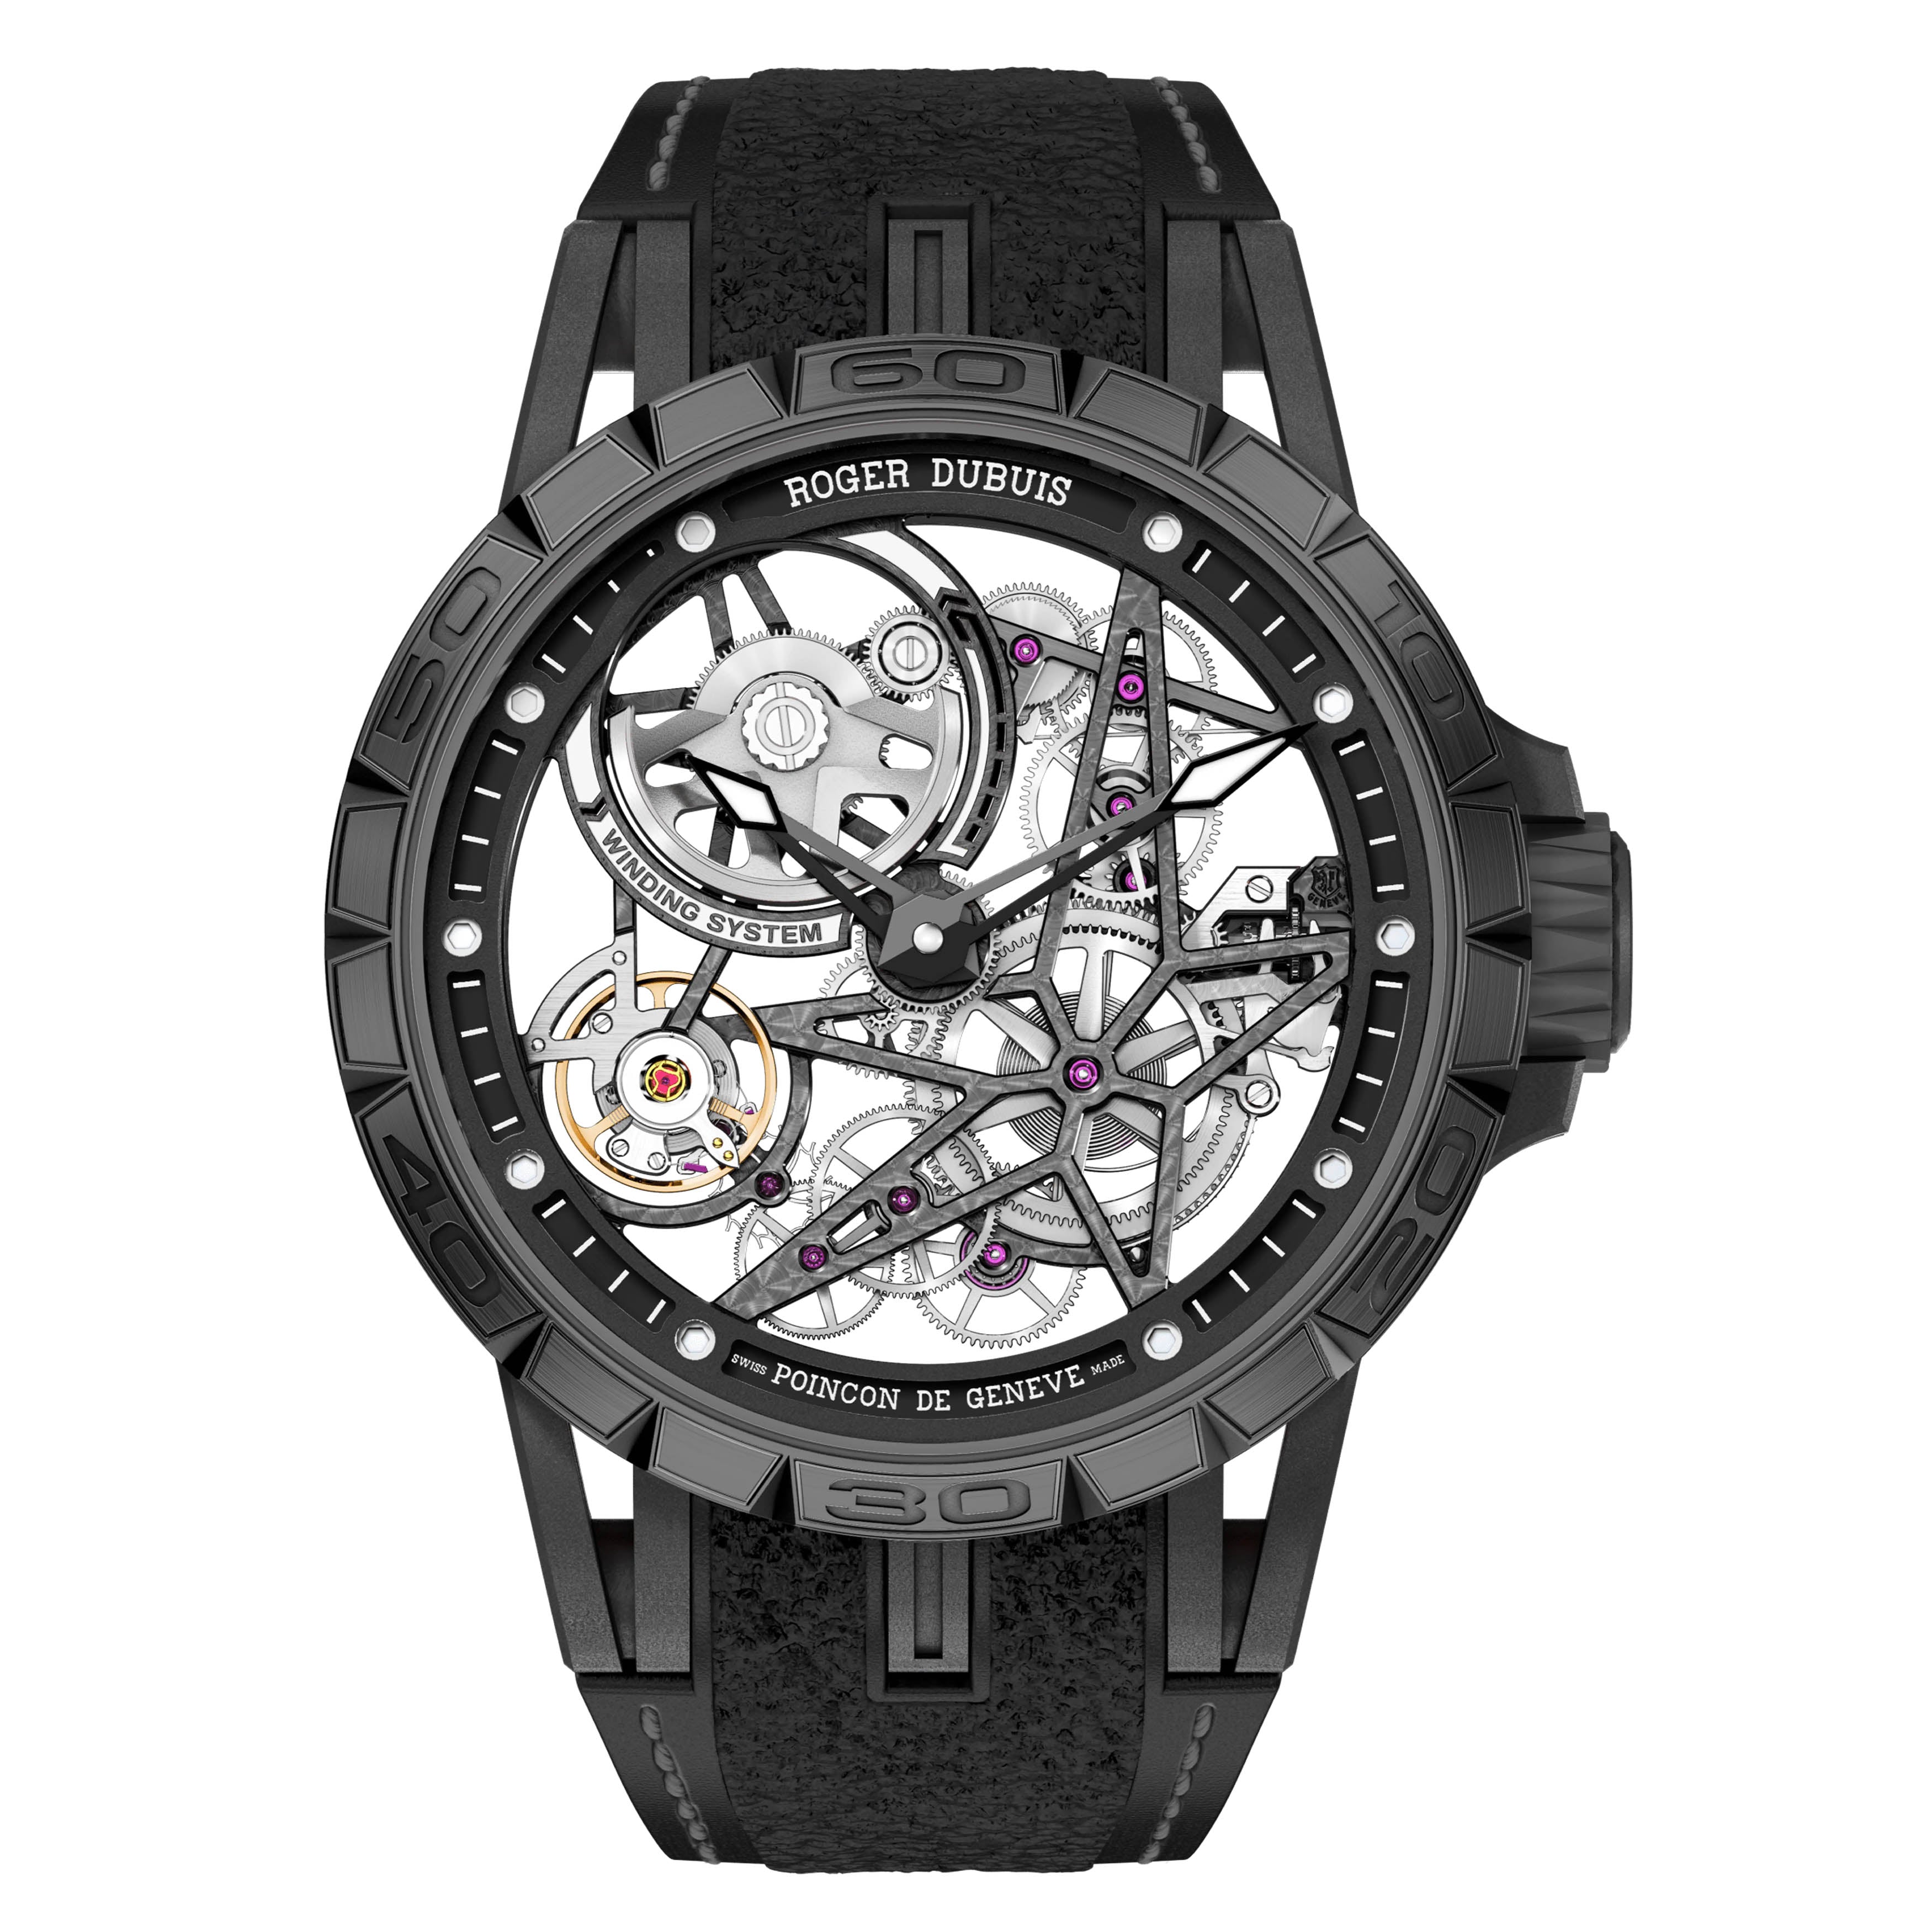 Roger Dubuis Excalibur Spider Pirelli Black DLC Titanium Watch, 45mm Black Skeleton Dial, DBEX0826